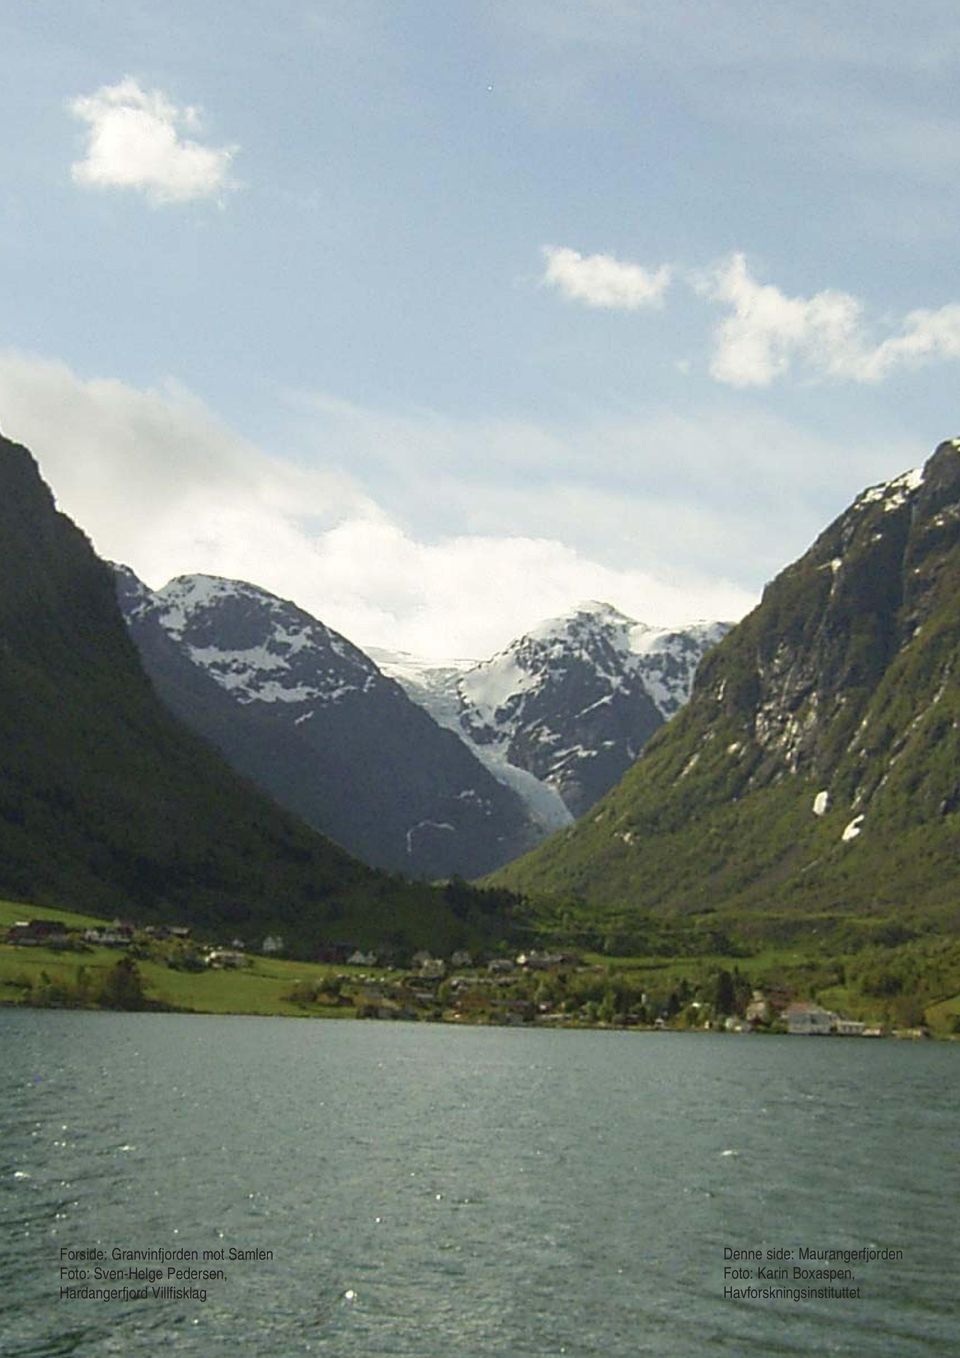 Villfisklag Denne side: Maurangerfjorden